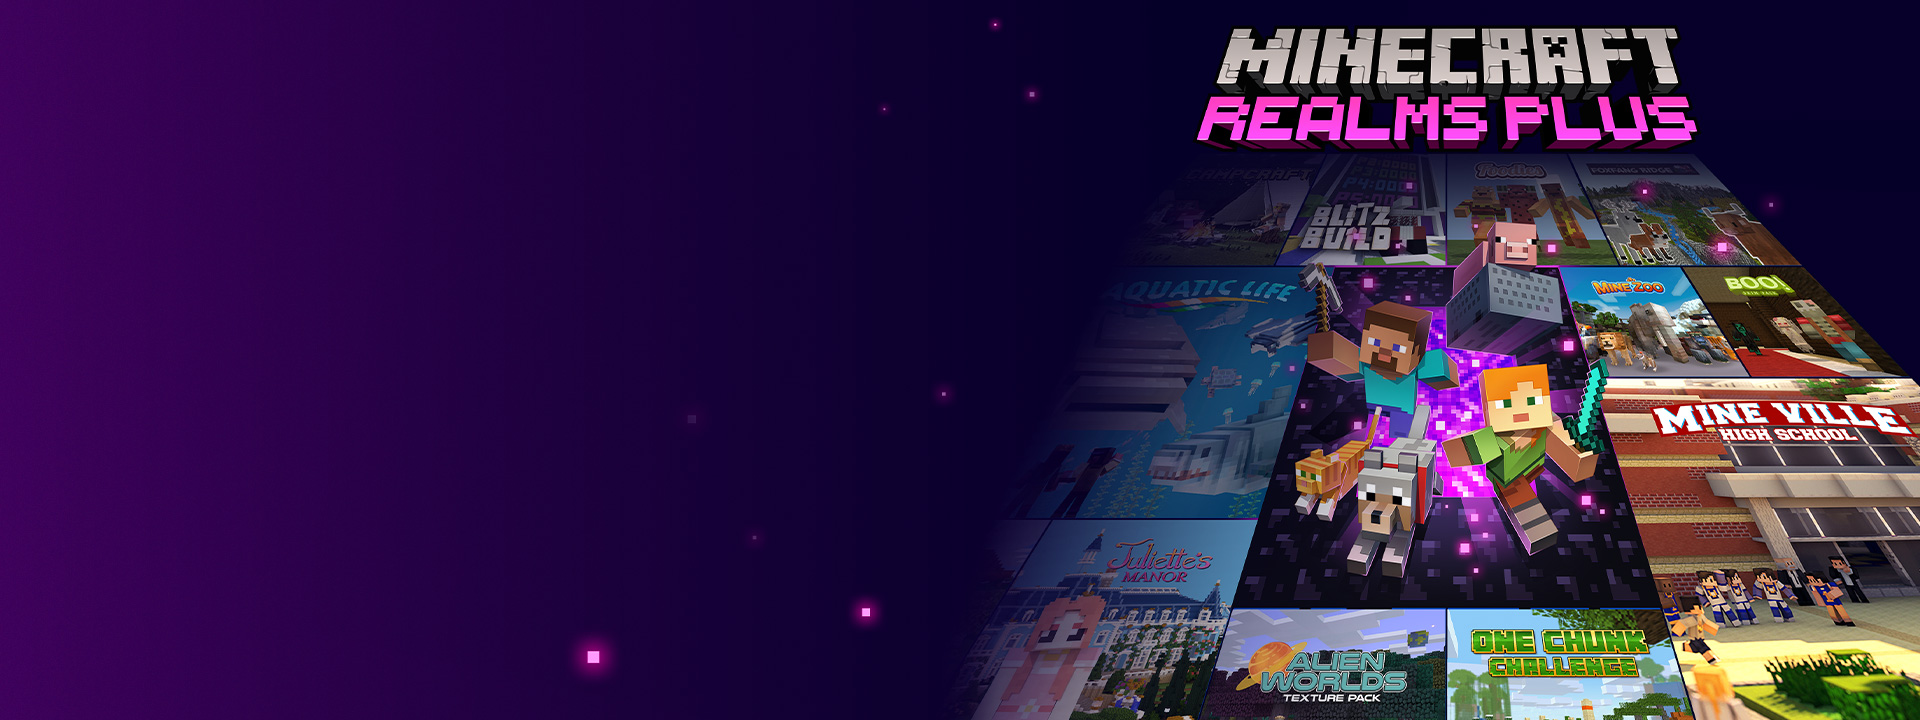 Minecraft Realms Plus, персонажи Minecraft выходят из портала Nether, за которым располагаются обложки других игр